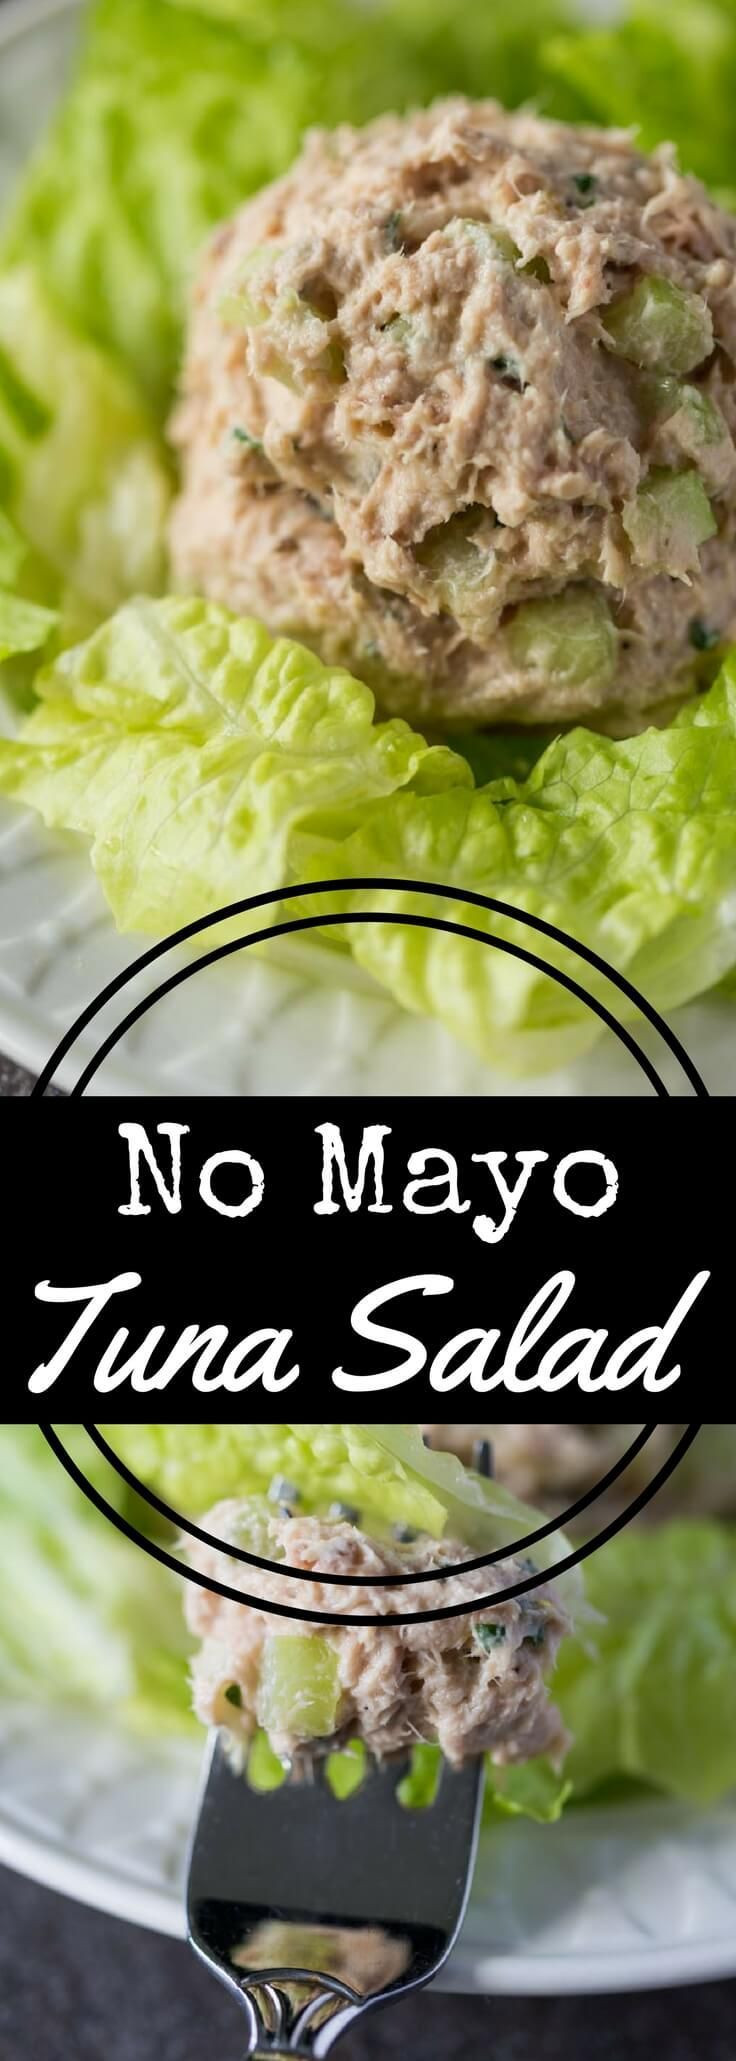 Tuna Sandwiches Without Mayo
 No Mayo Tuna Salad Recipe